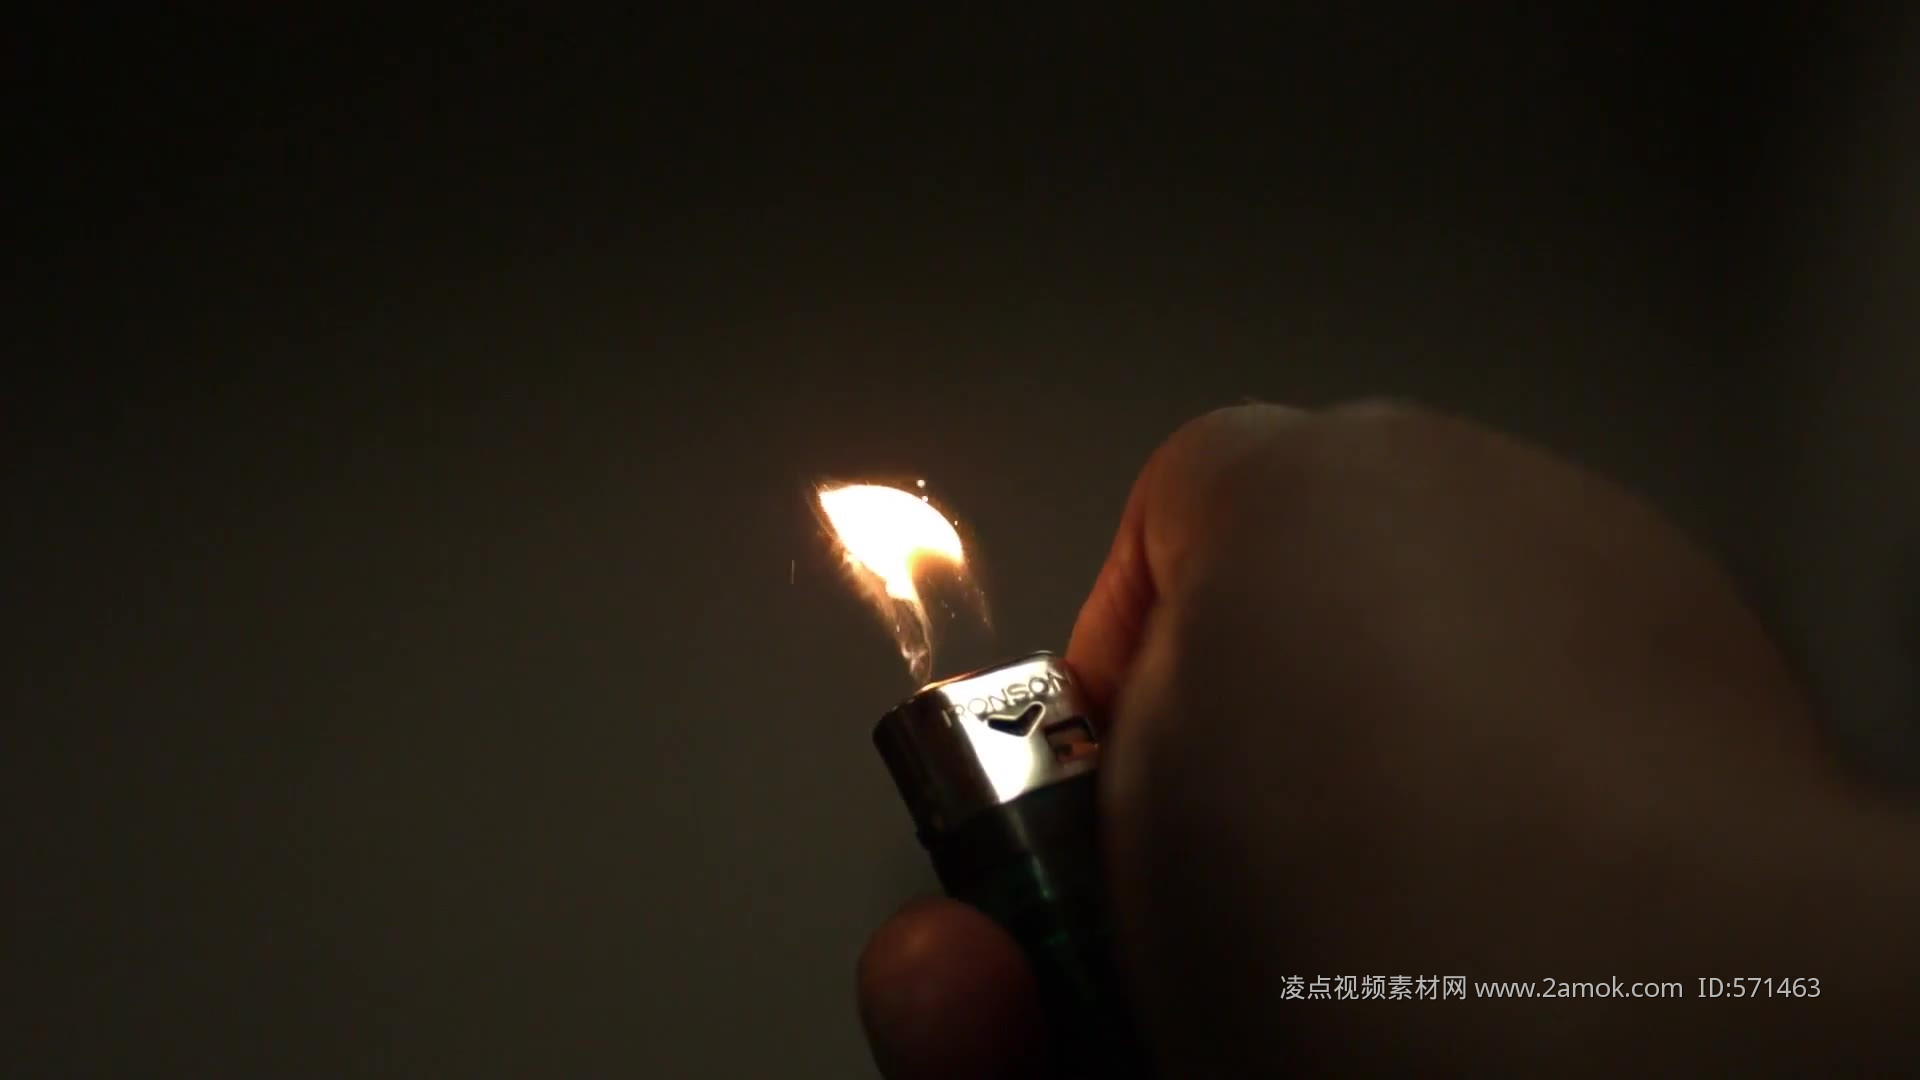 壁纸 火焰，手，打火机 2560x1440 QHD 高清壁纸, 图片, 照片